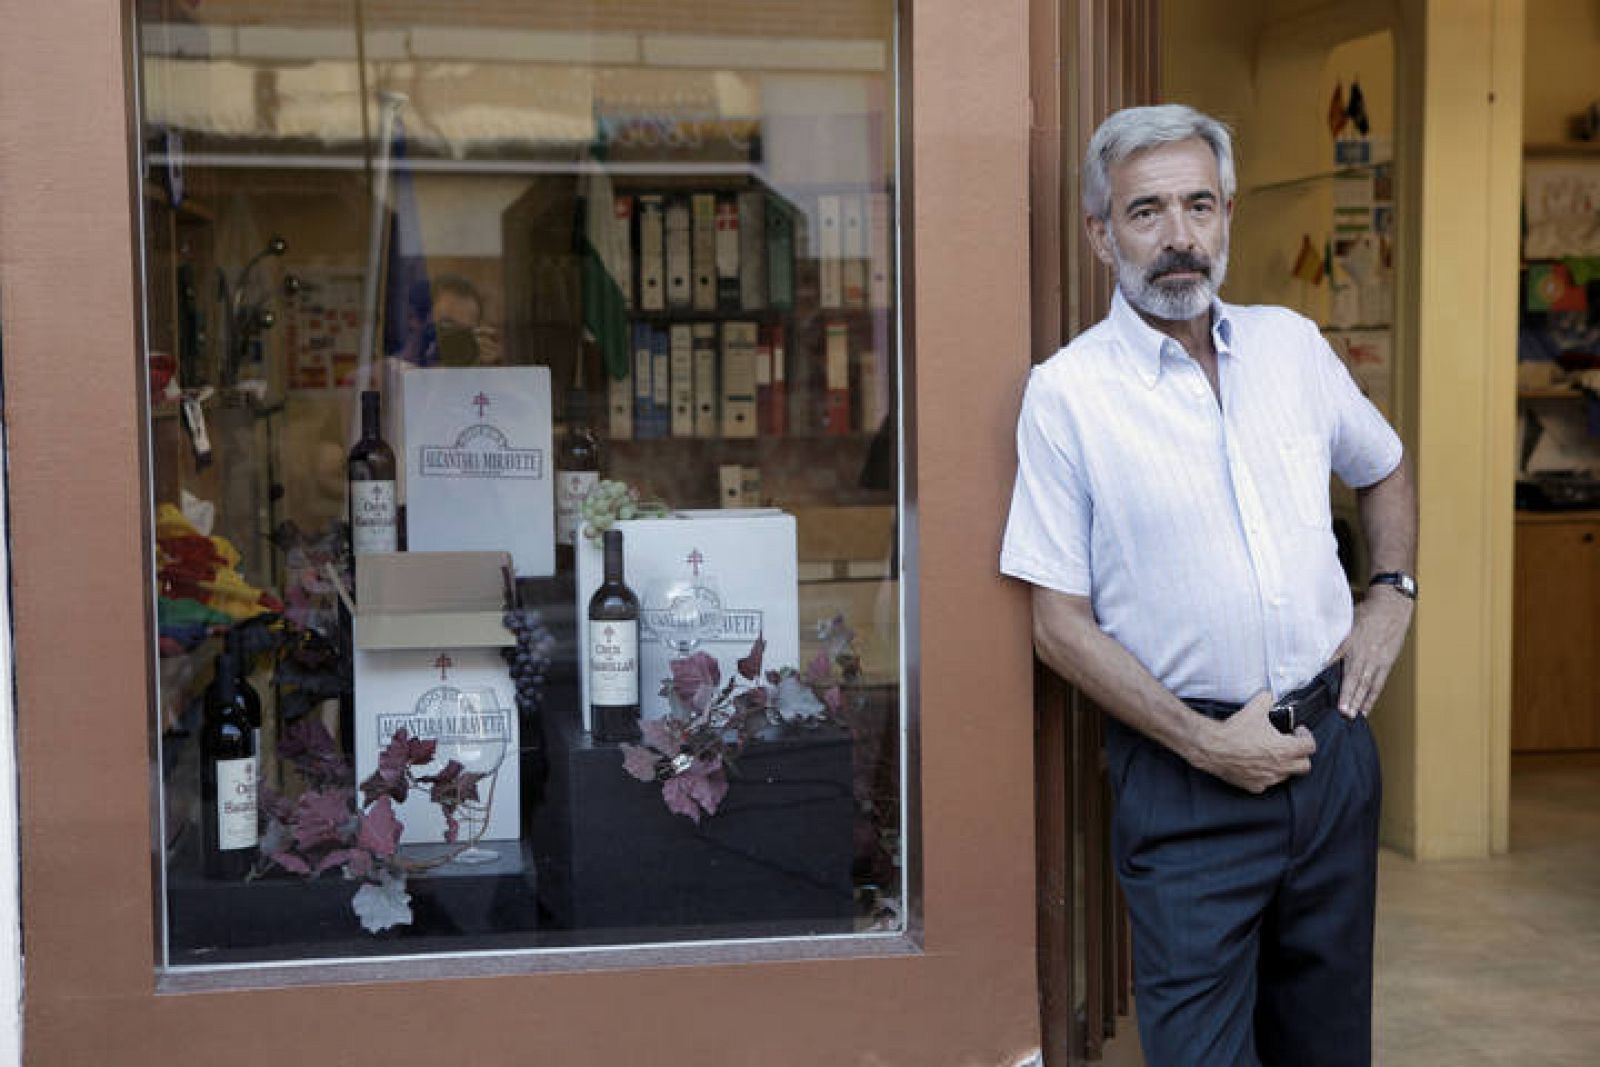 Imanol Arias da vida a Antonio Alcántara, que posa ante su tienda de estandartes y banderas.